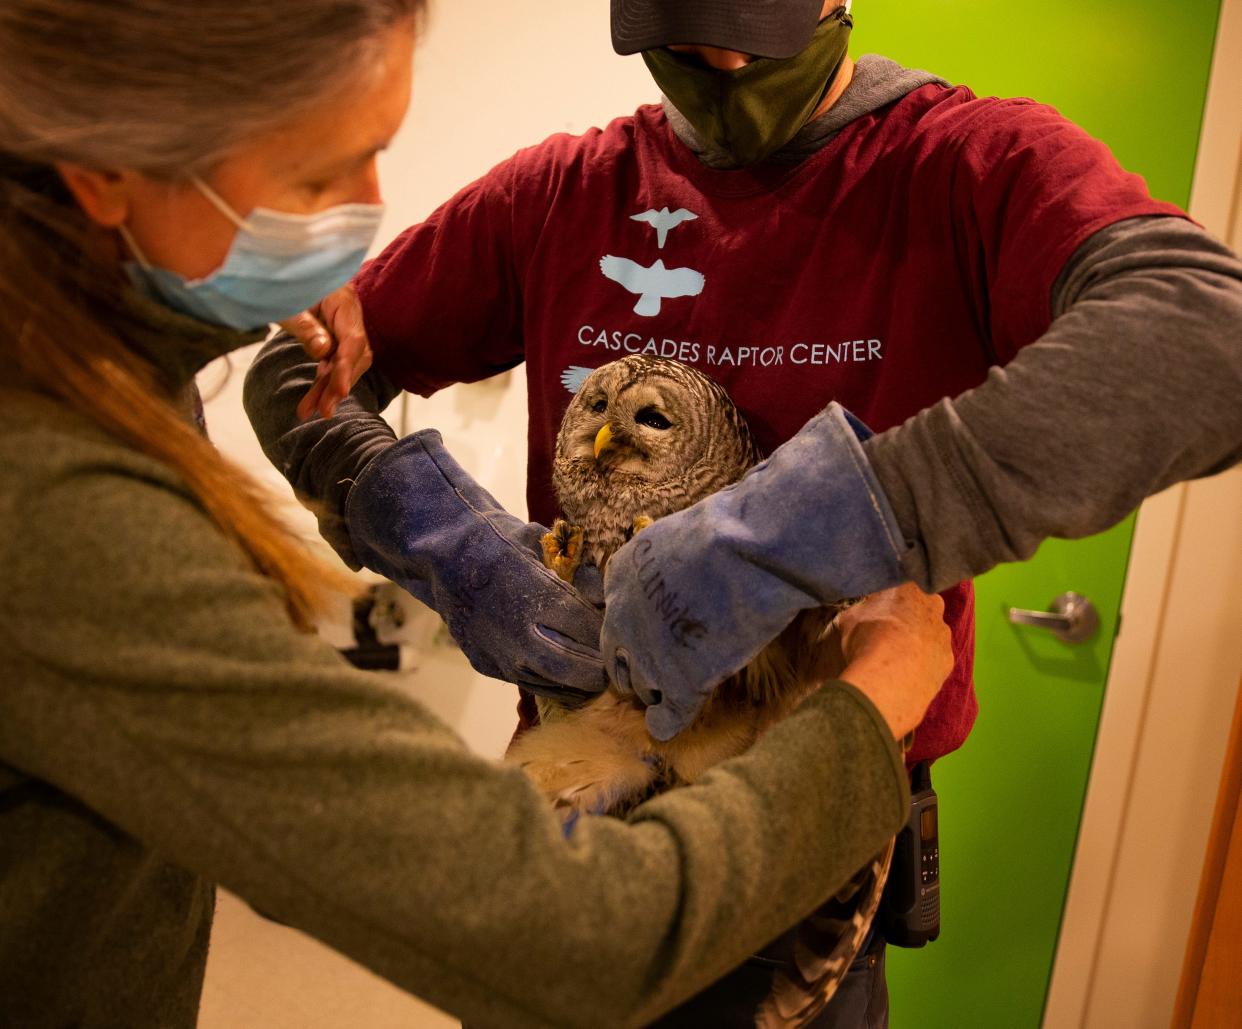 Cascades Raptor Center veterinarian Ulrike Streicher and volunteer Carlina Otterstedt attend to an injured bird at the center in December 2021.